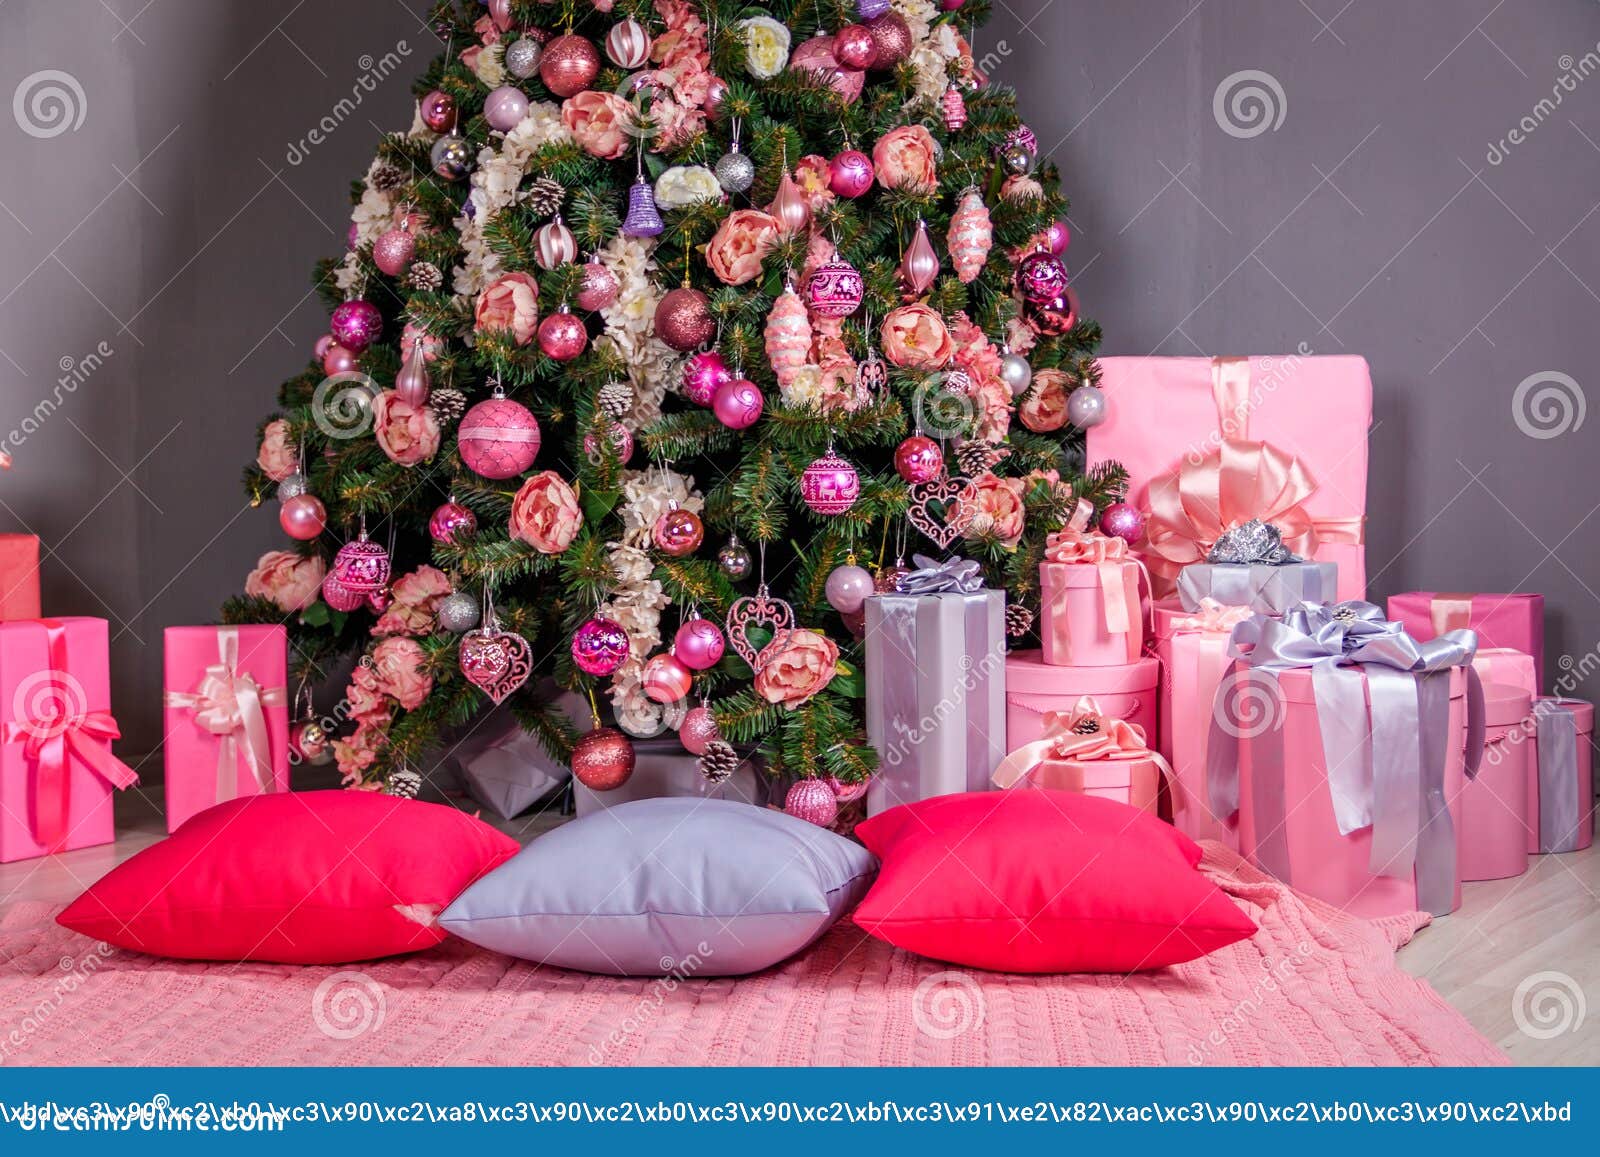 Bolas De Navidad Rosas En El árbol De Navidad Decoración De árbol De Navidad  Foto de archivo - Imagen de bola, navidad: 134157260